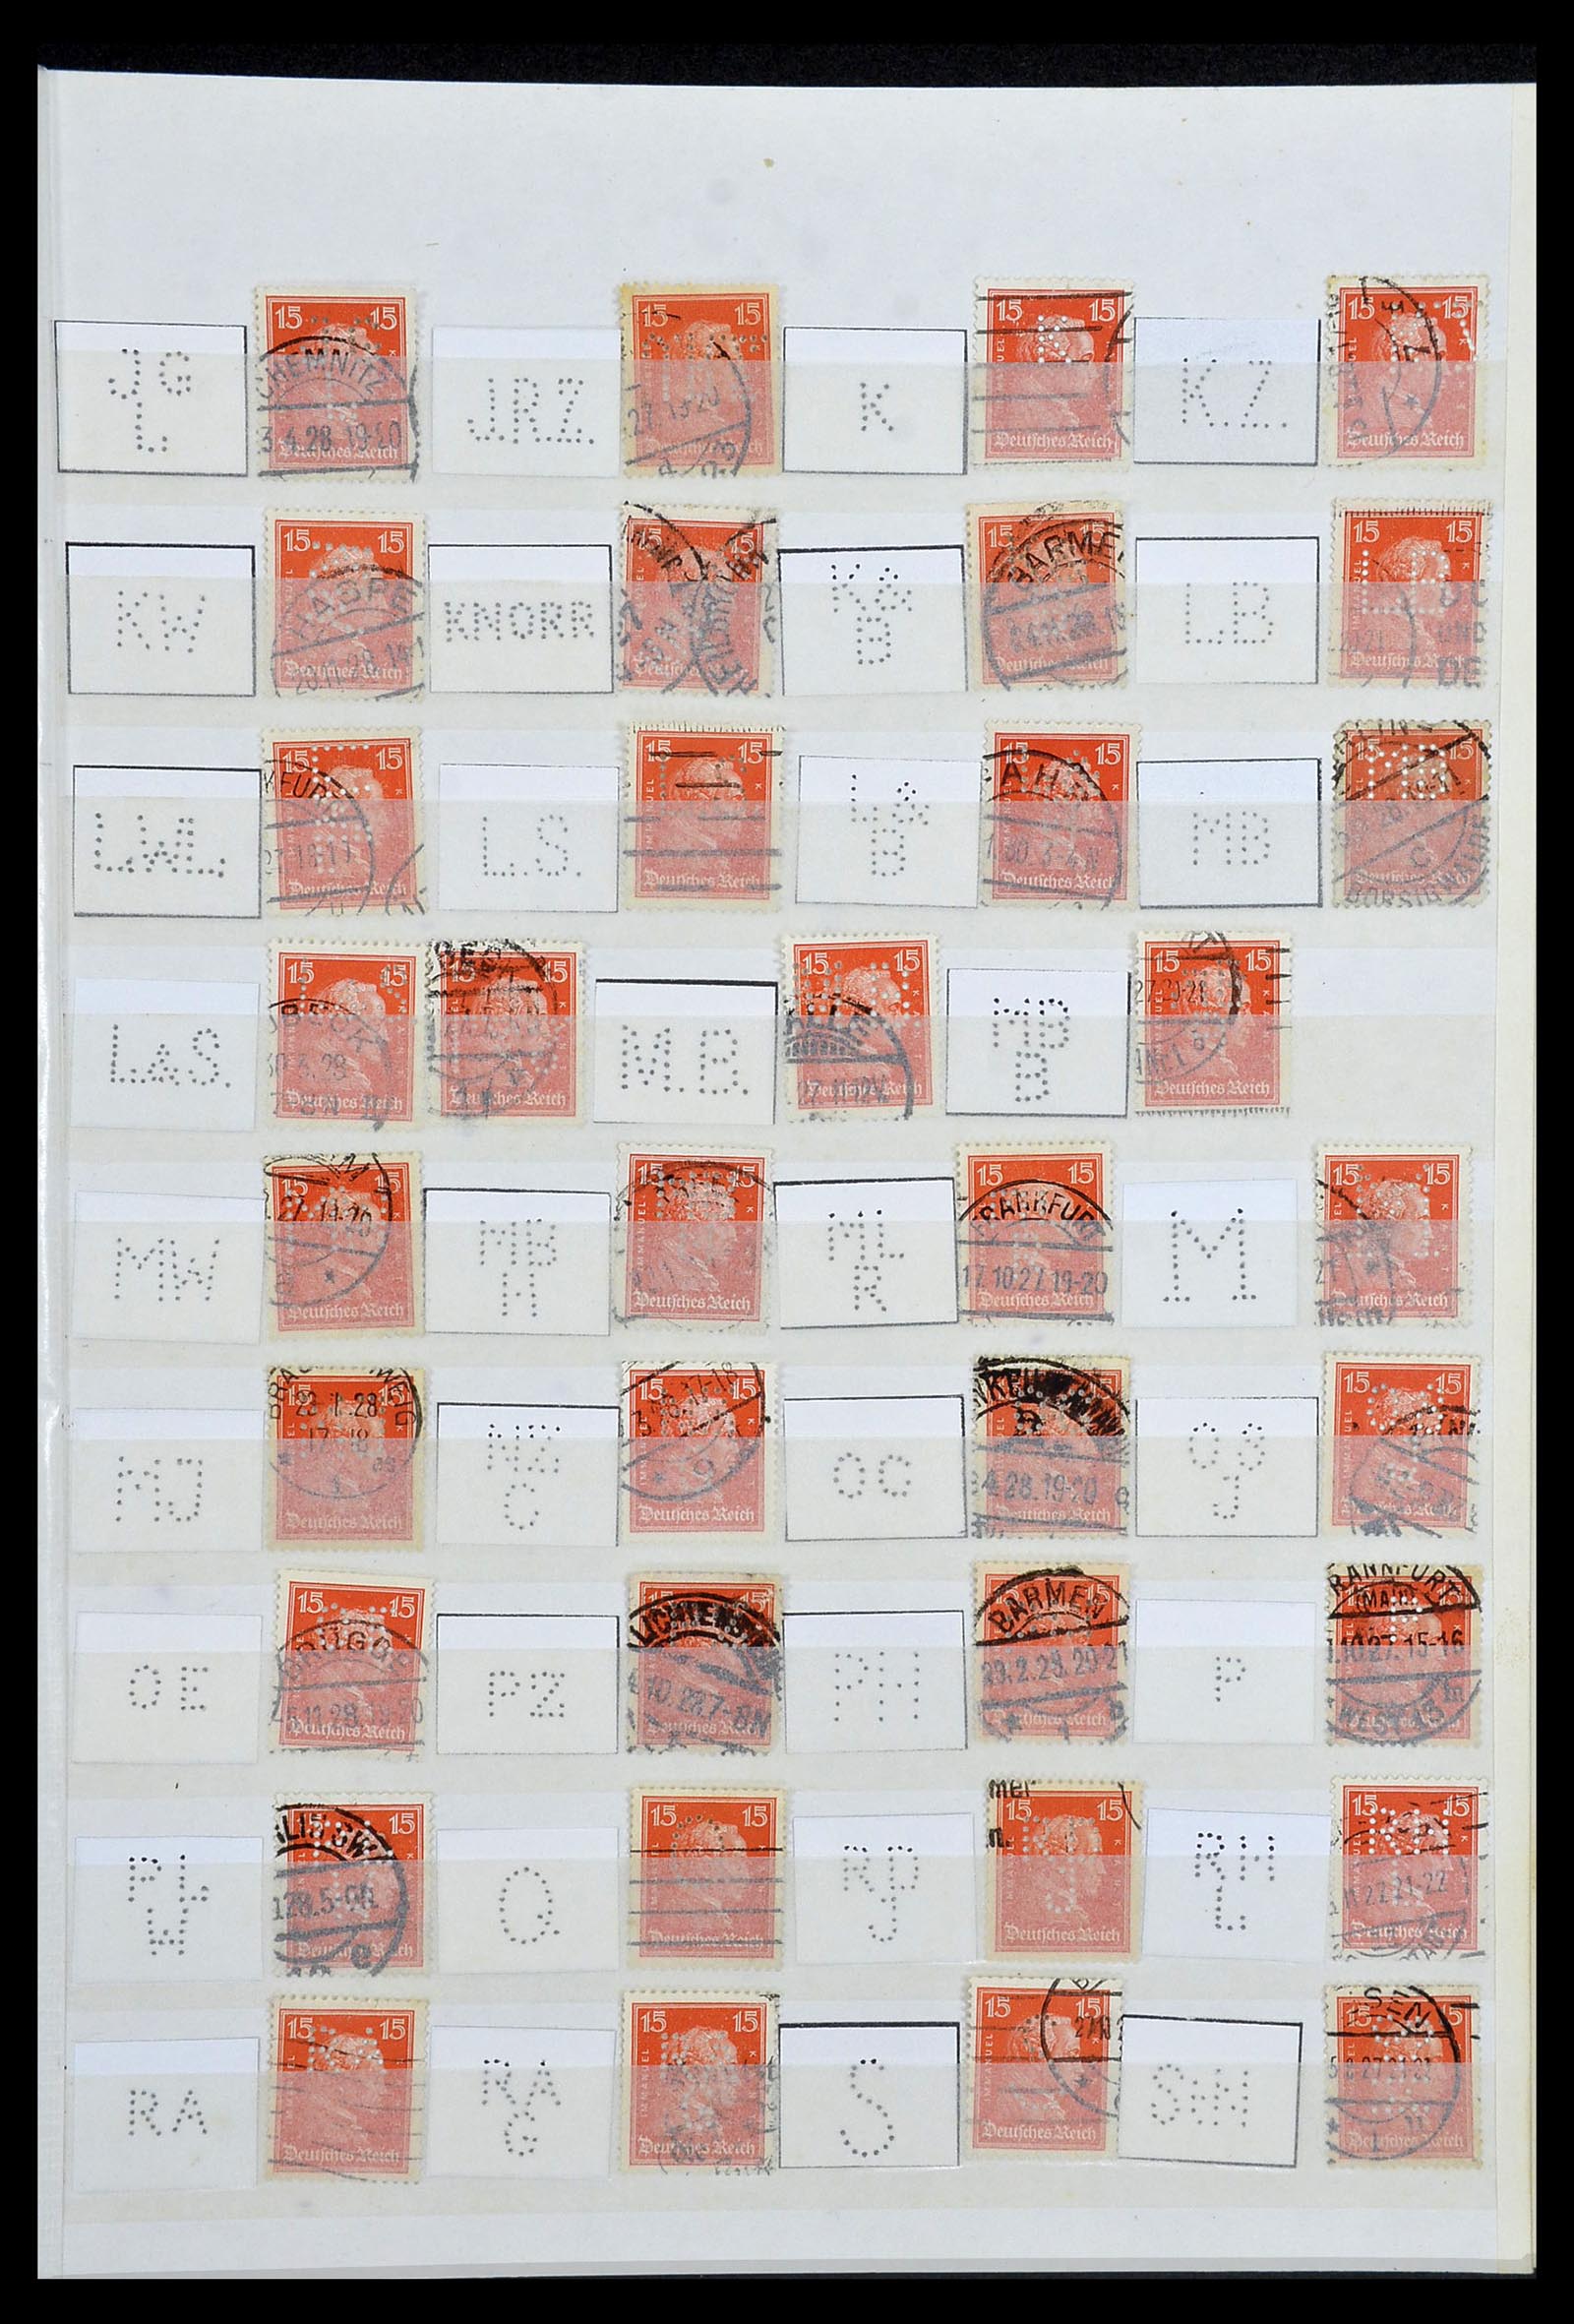 34071 005 - Stamp collection 34071 German Reich perfins 1923-1930.